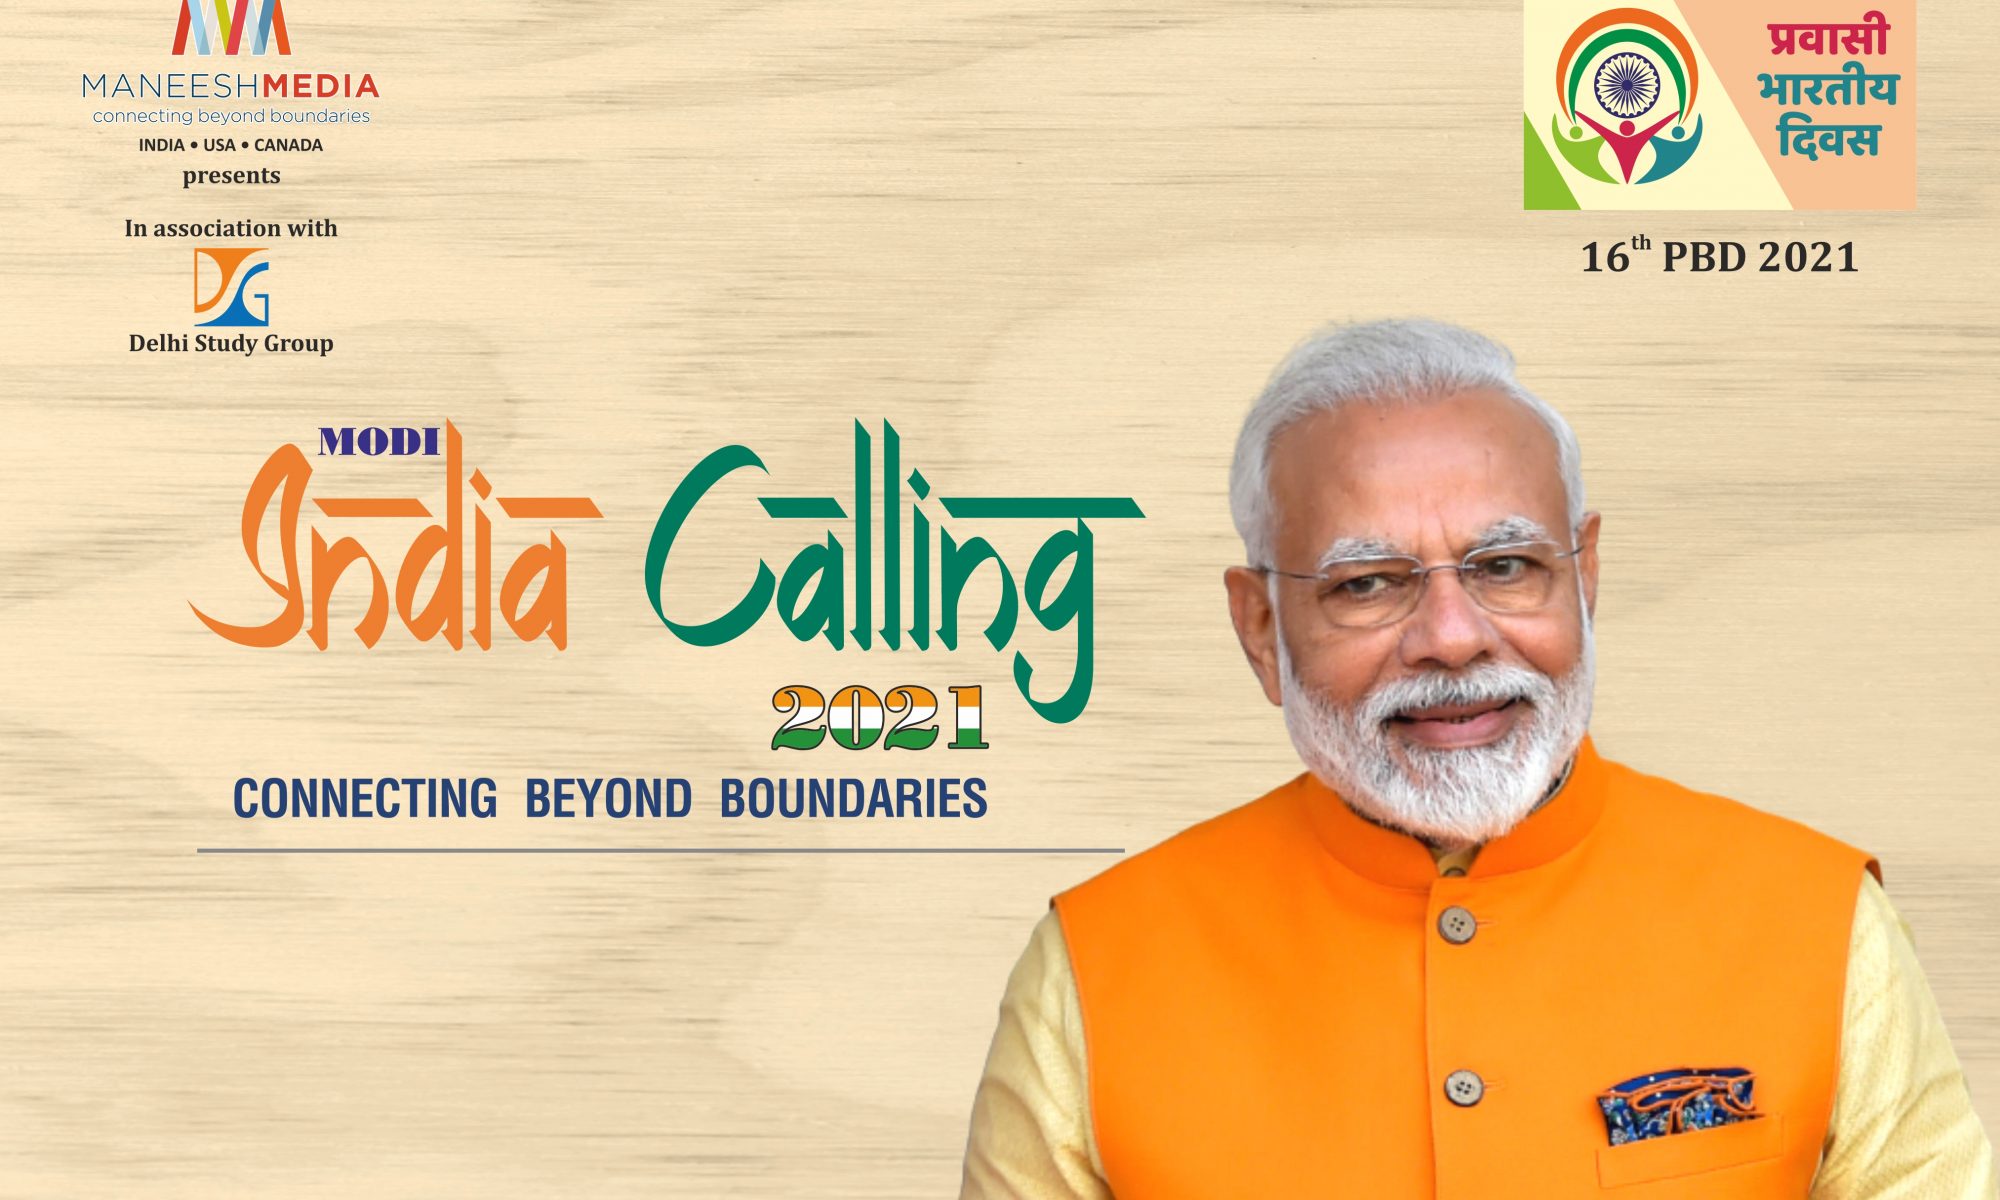 India Calling 2021